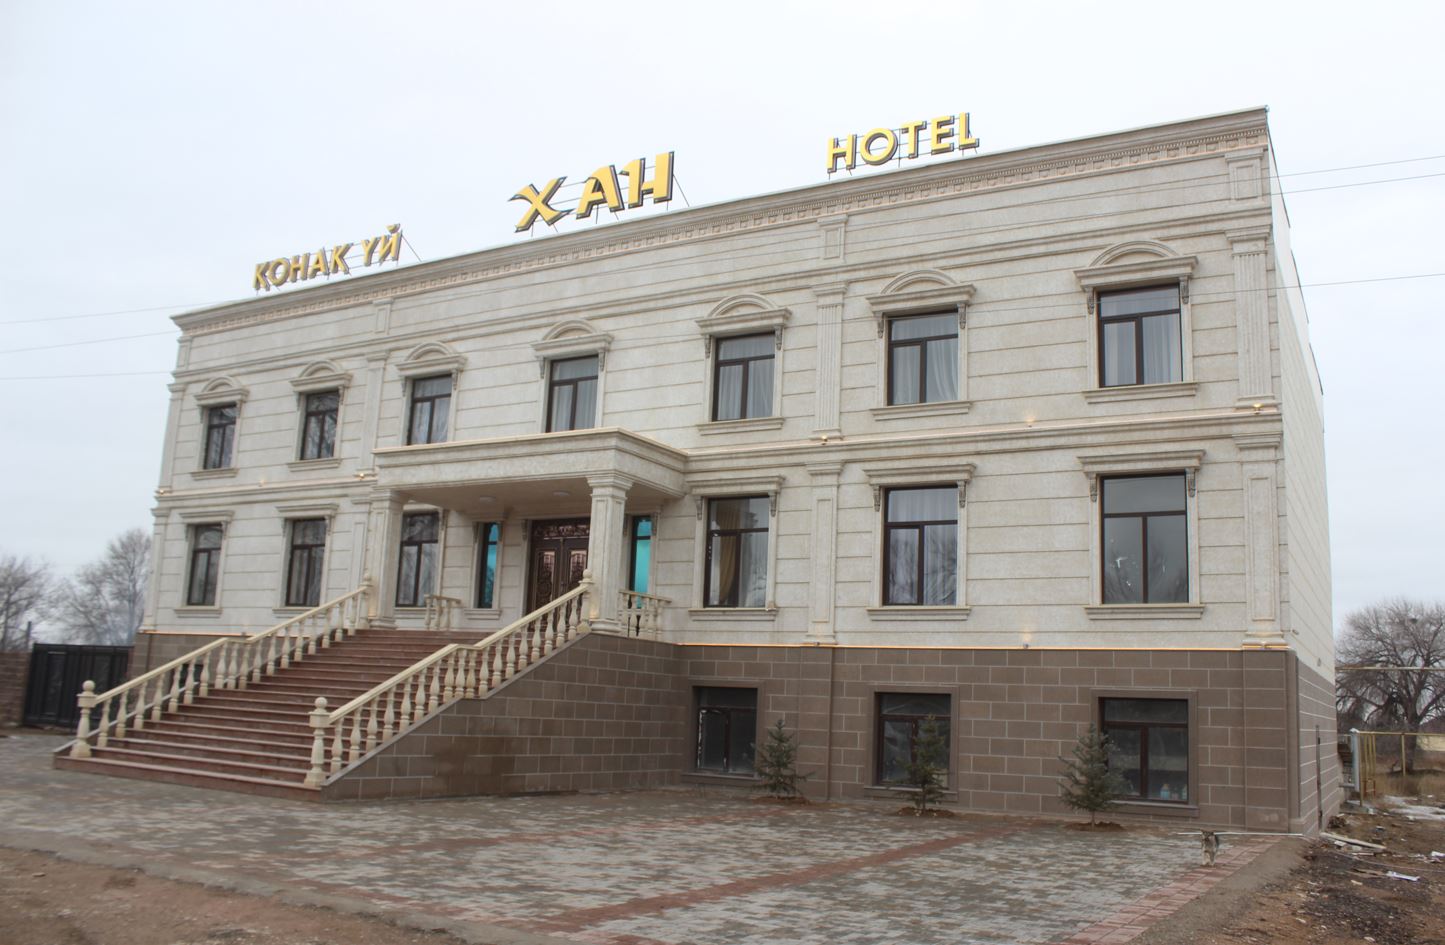 В Шуском районе Жамбылской области открыта новая гостиница ХАН